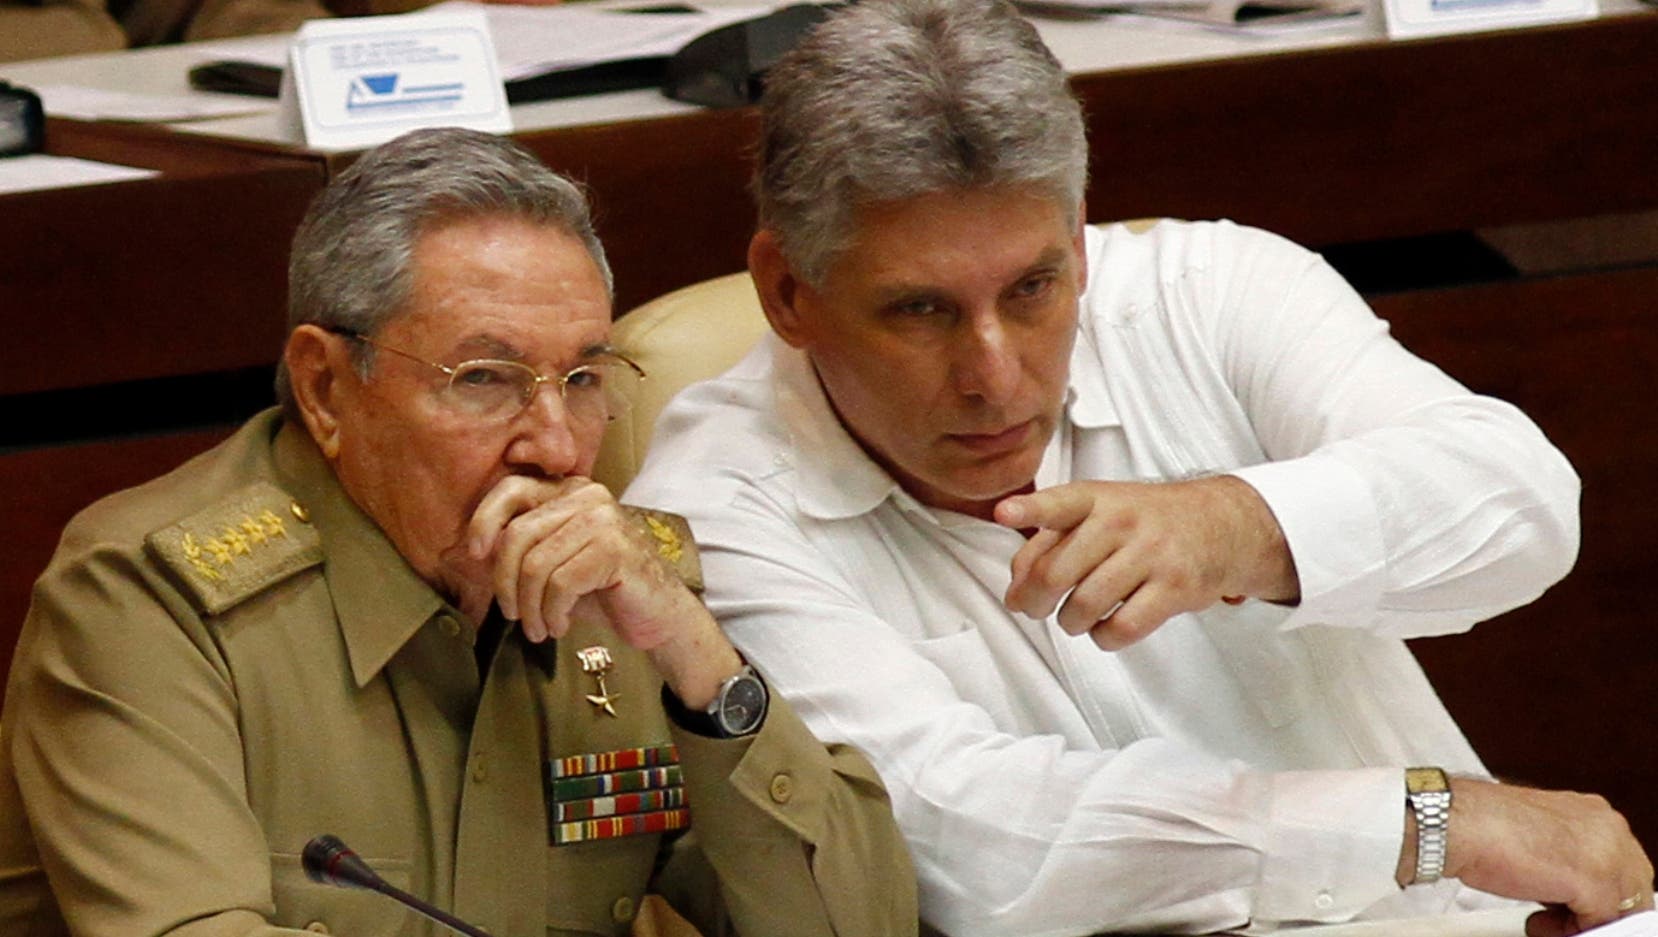 El relevo de poder de RaÃºl Castro se harÃ¡ en Cuba de manera suave,  sin sobresaltos; y el paÃ­s seguirÃ¡ abrazado a su revoluciÃ³n.